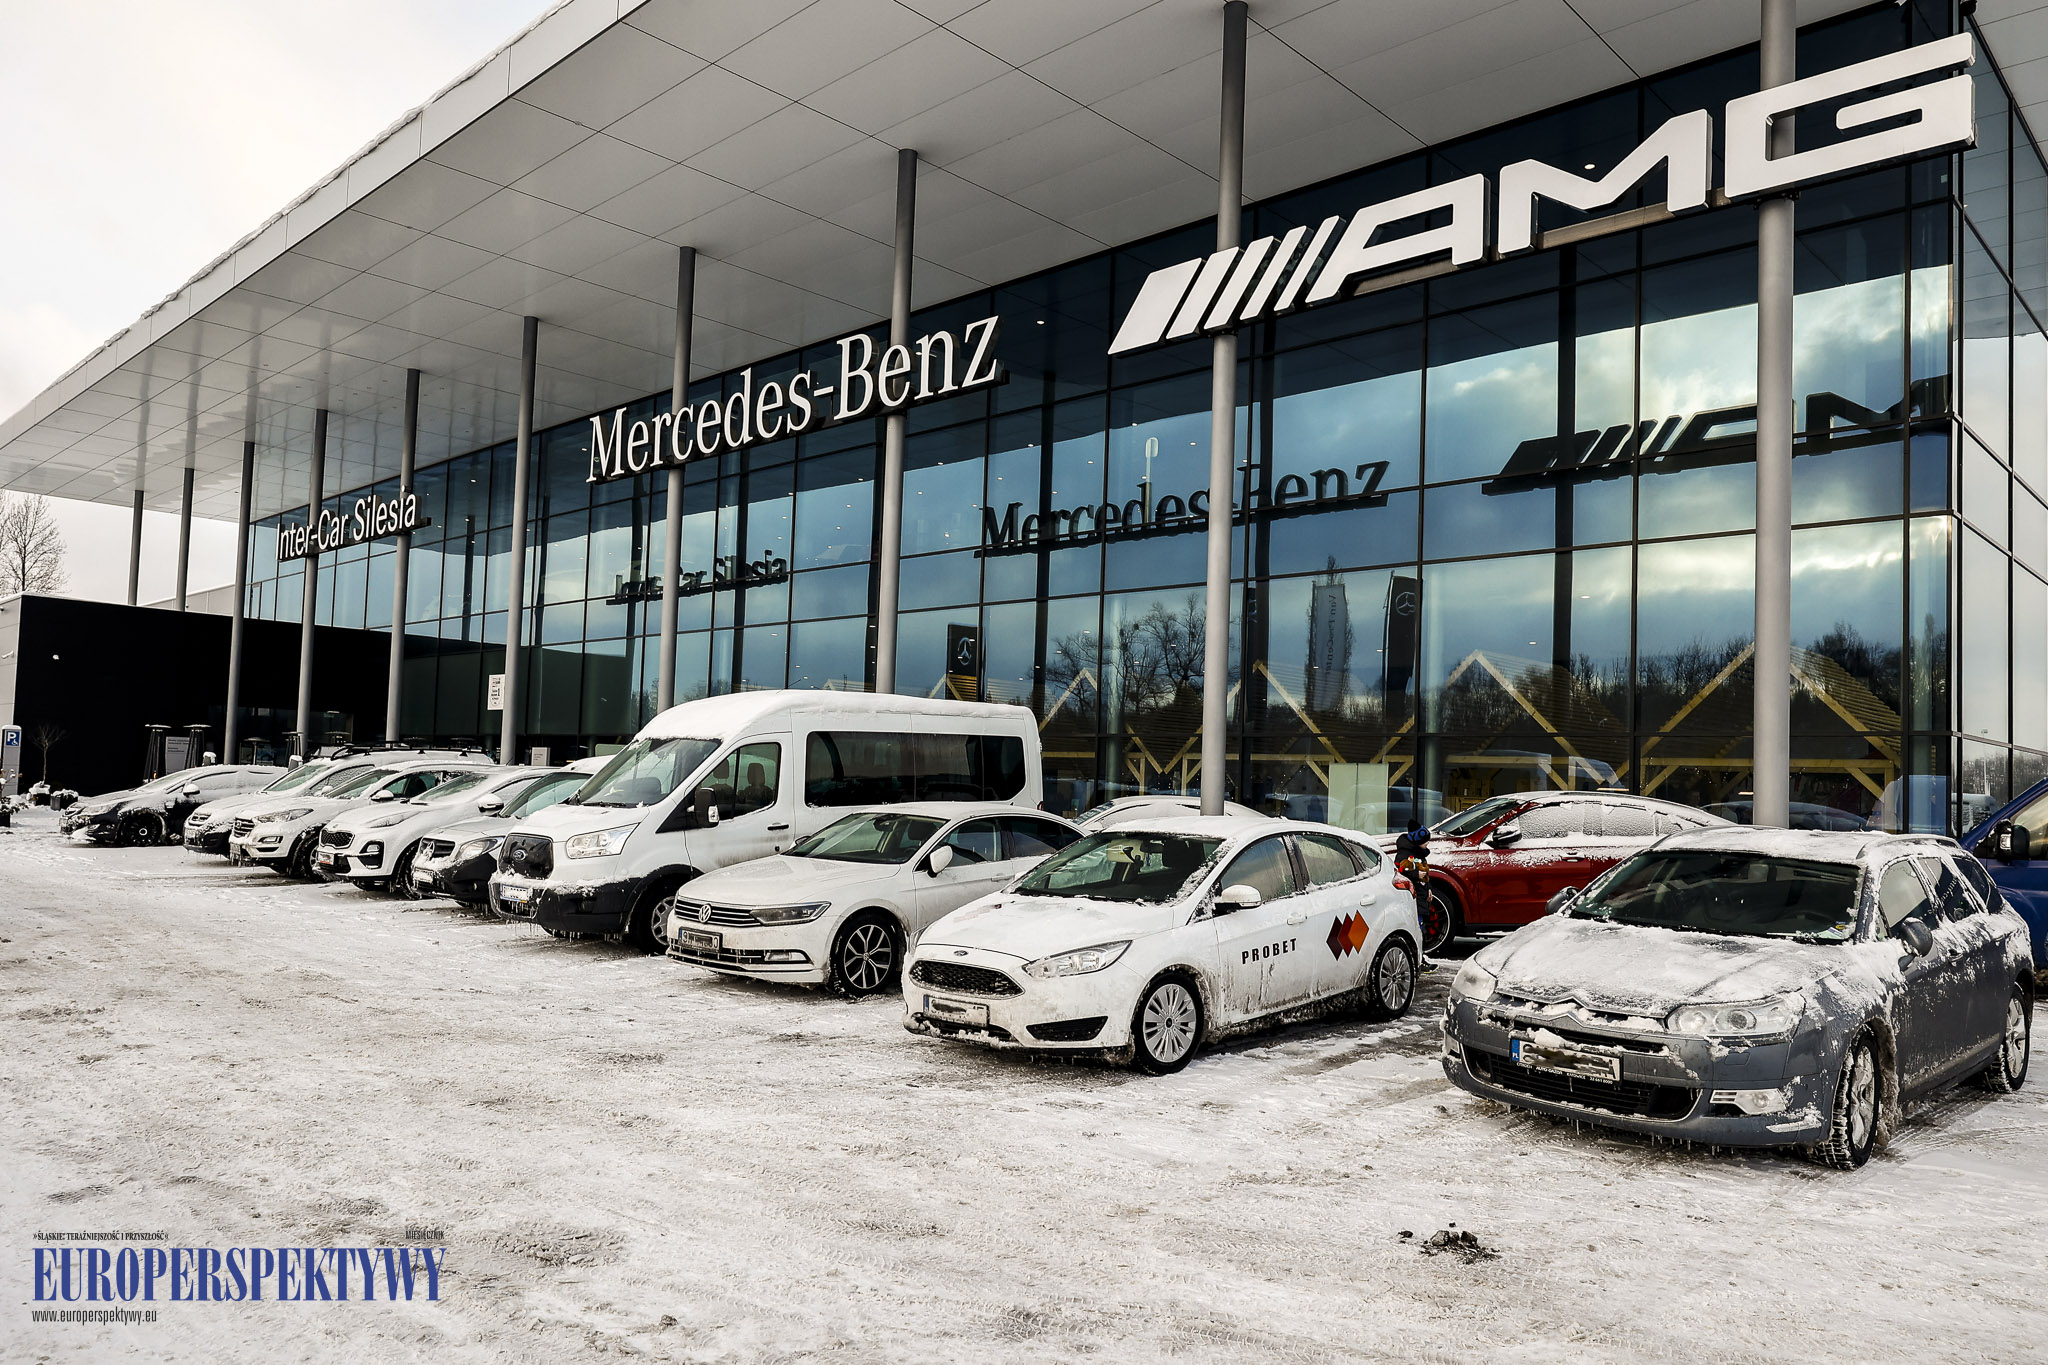 Europerspektywy Inter-Car Silesia Mercedes-Benz: eko mikołajki